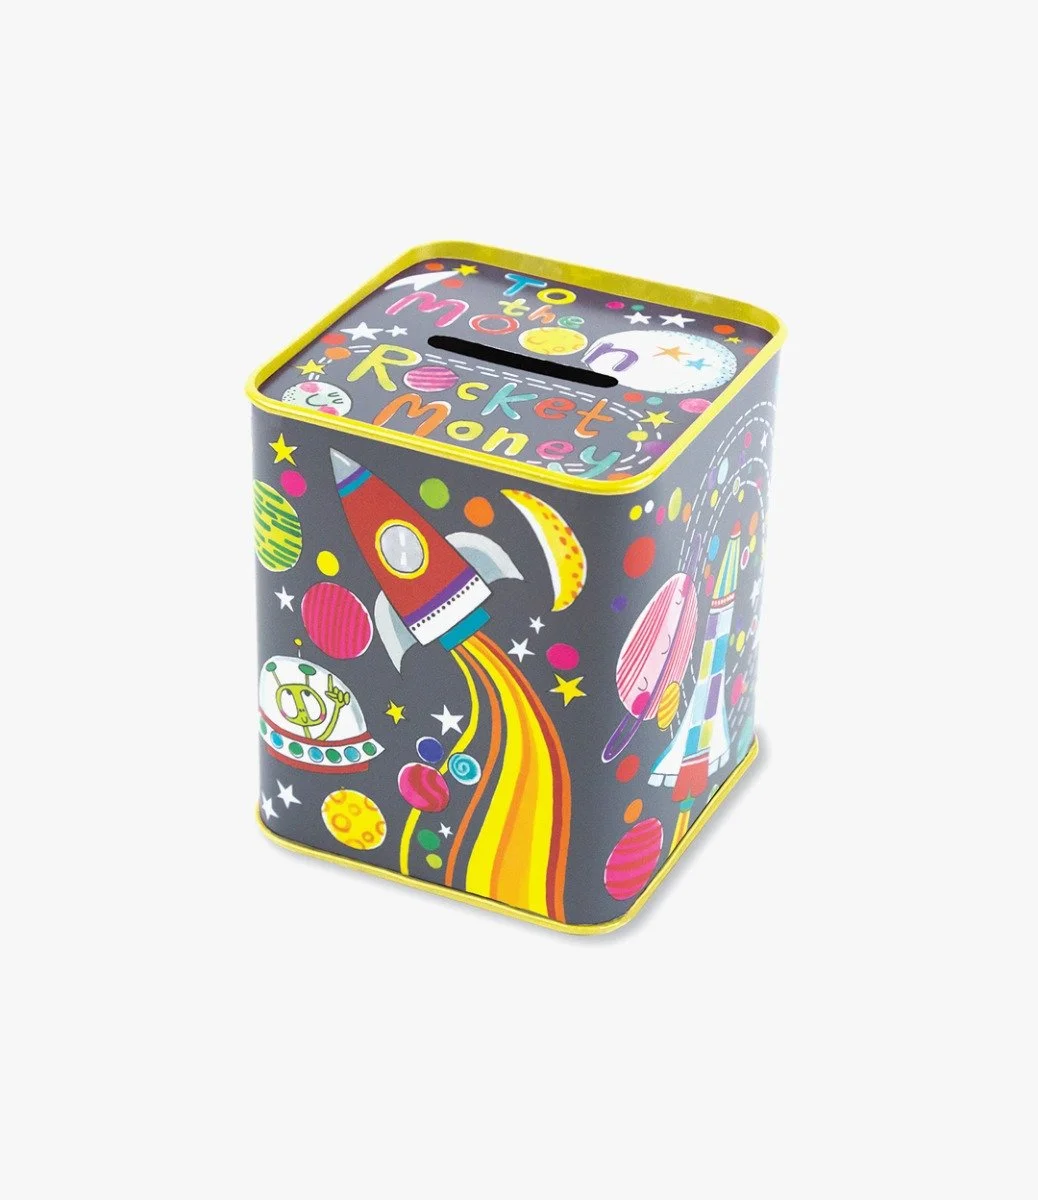 Money Box - To the Moon By Rachel Ellen Designs